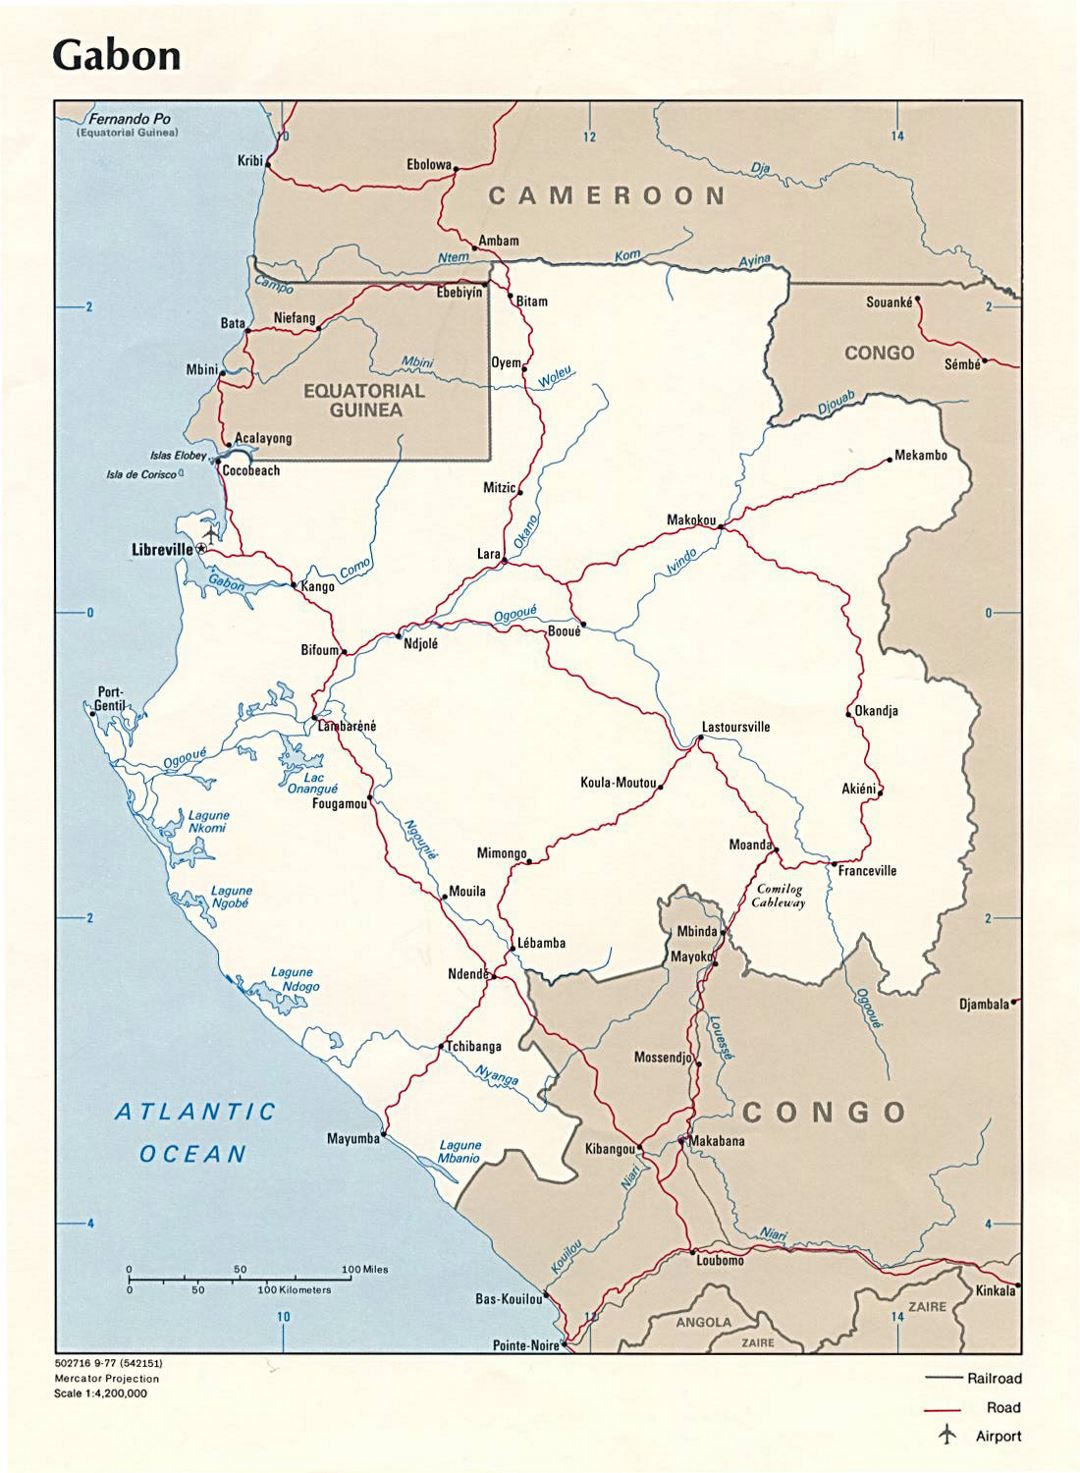 Большая политическая карта Габона с дорогами, железными дорогами, крупными городами и аэропортами - 1977